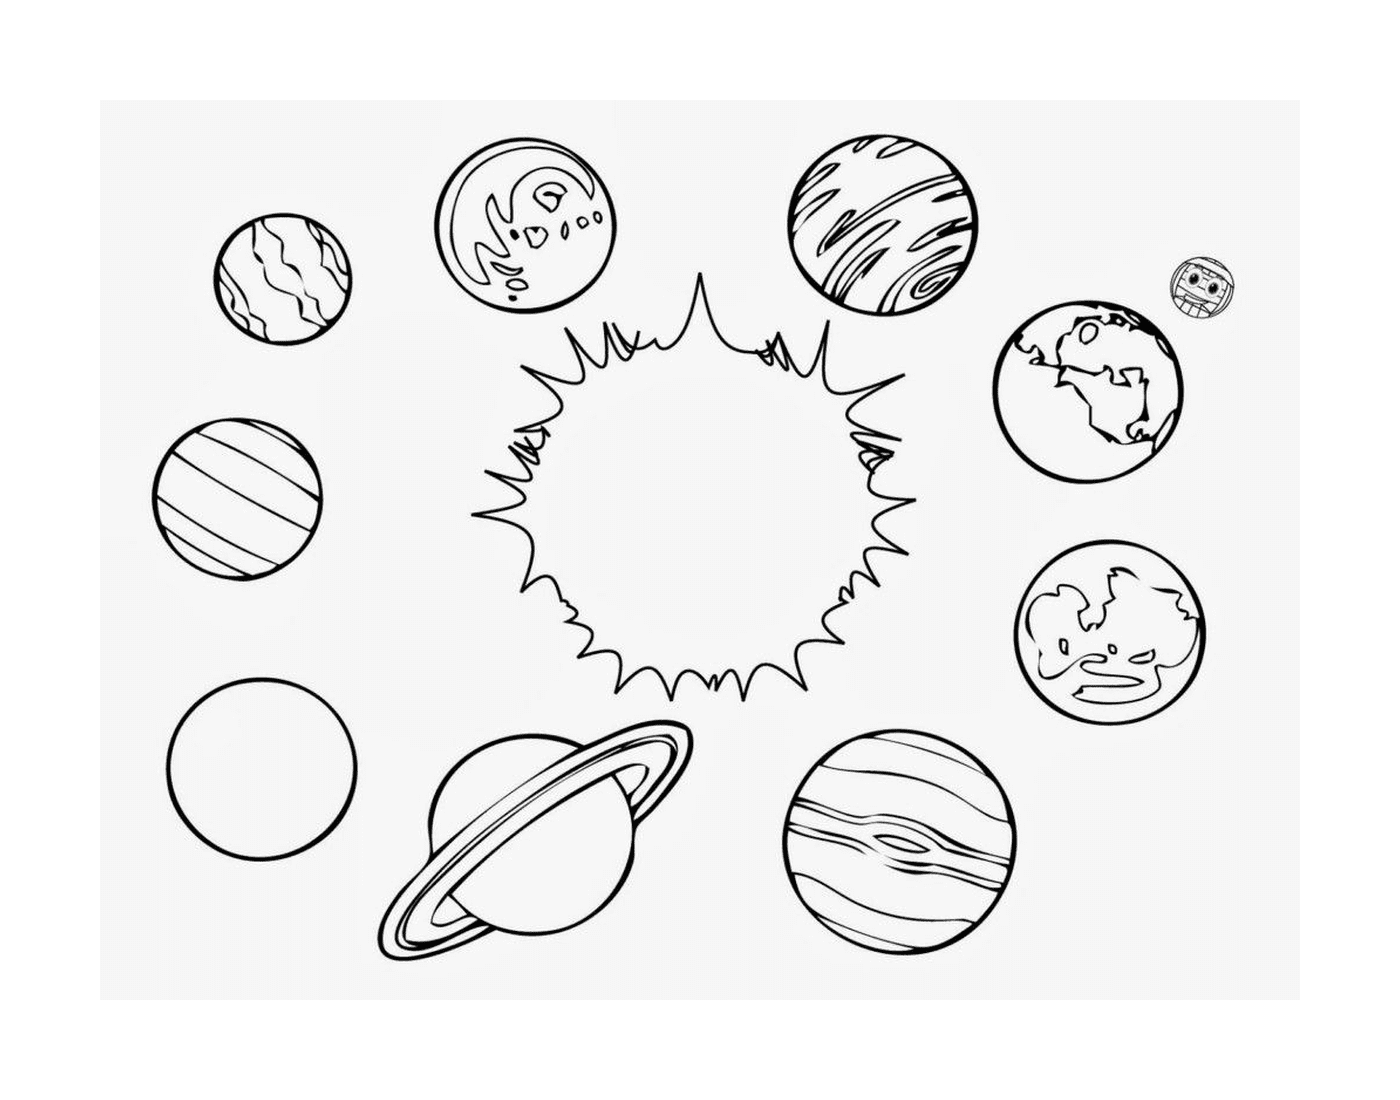  Gruppo di pianeti nel sistema solare 